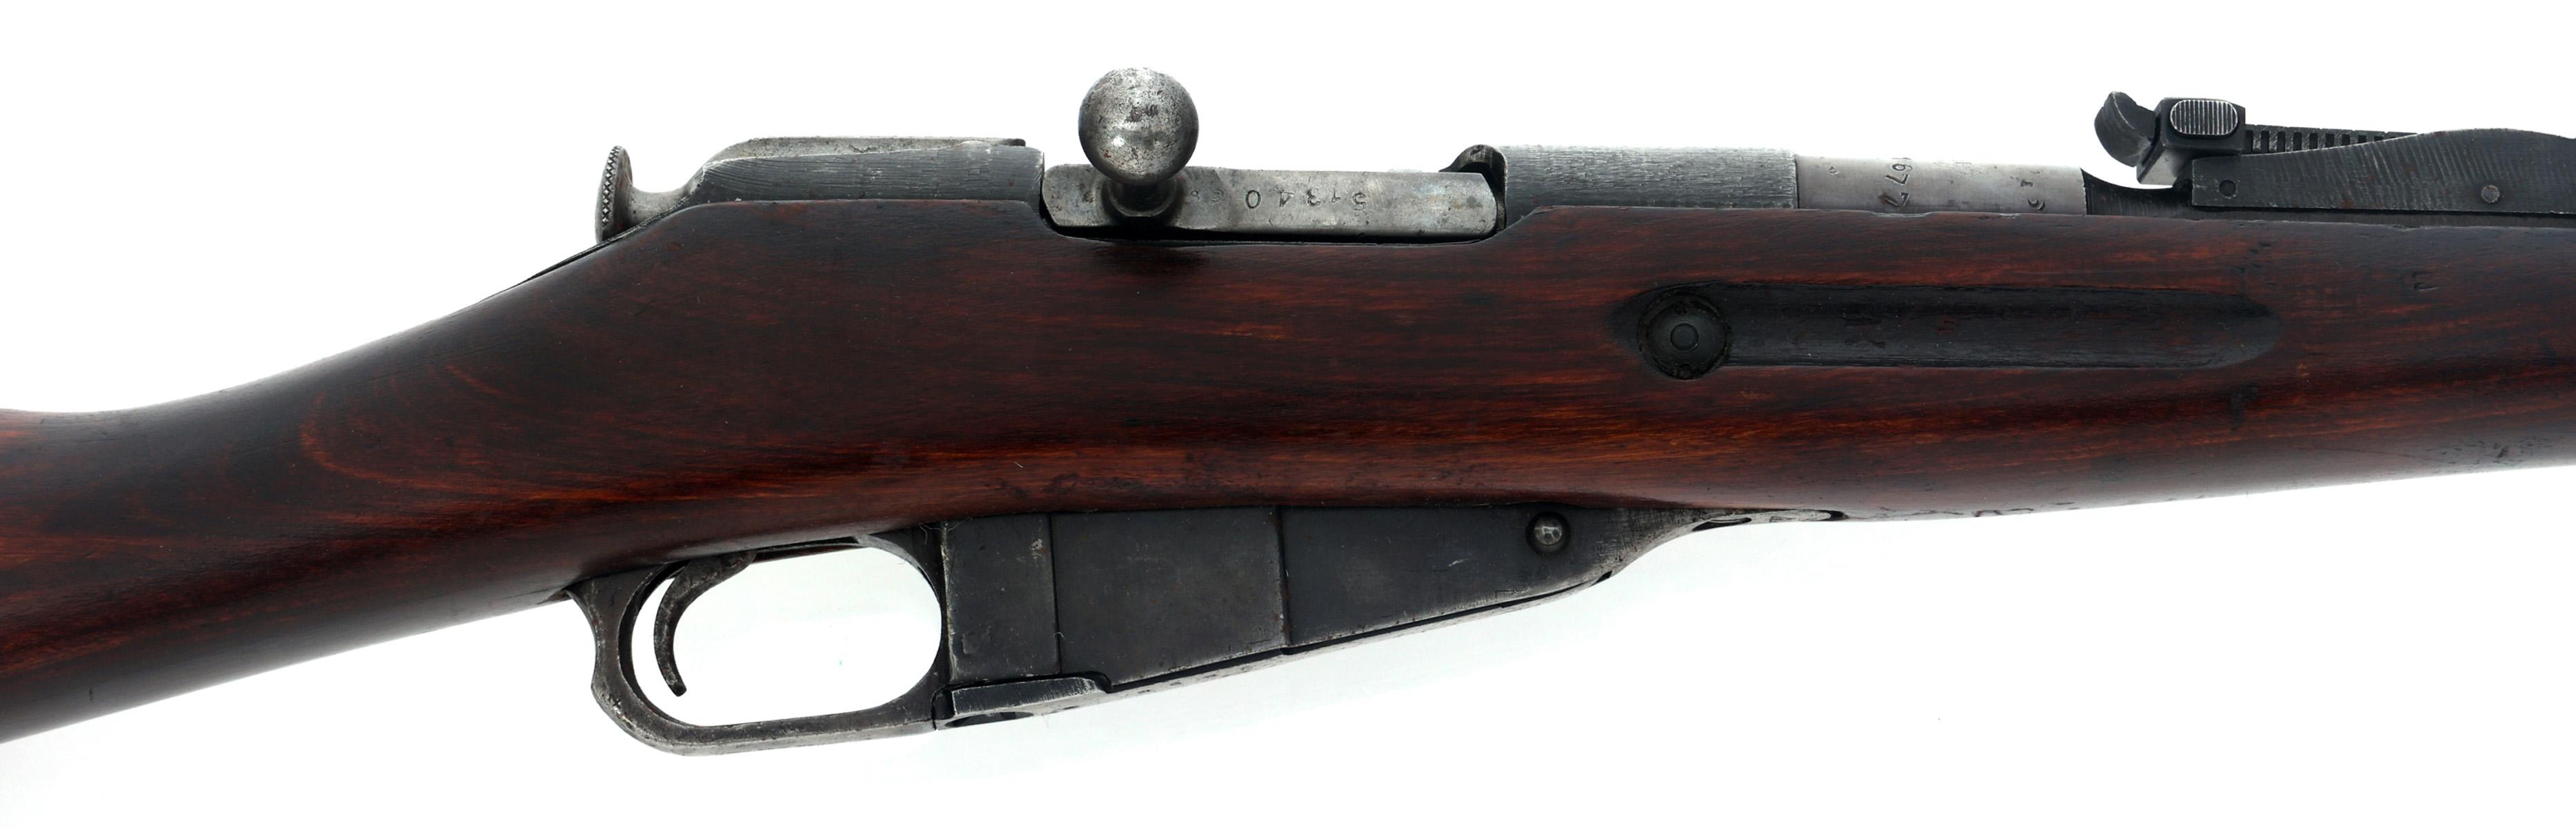 1943 RUSSIAN IZHEVSK MODEL 91/30 7.62mmR CAL RIFLE